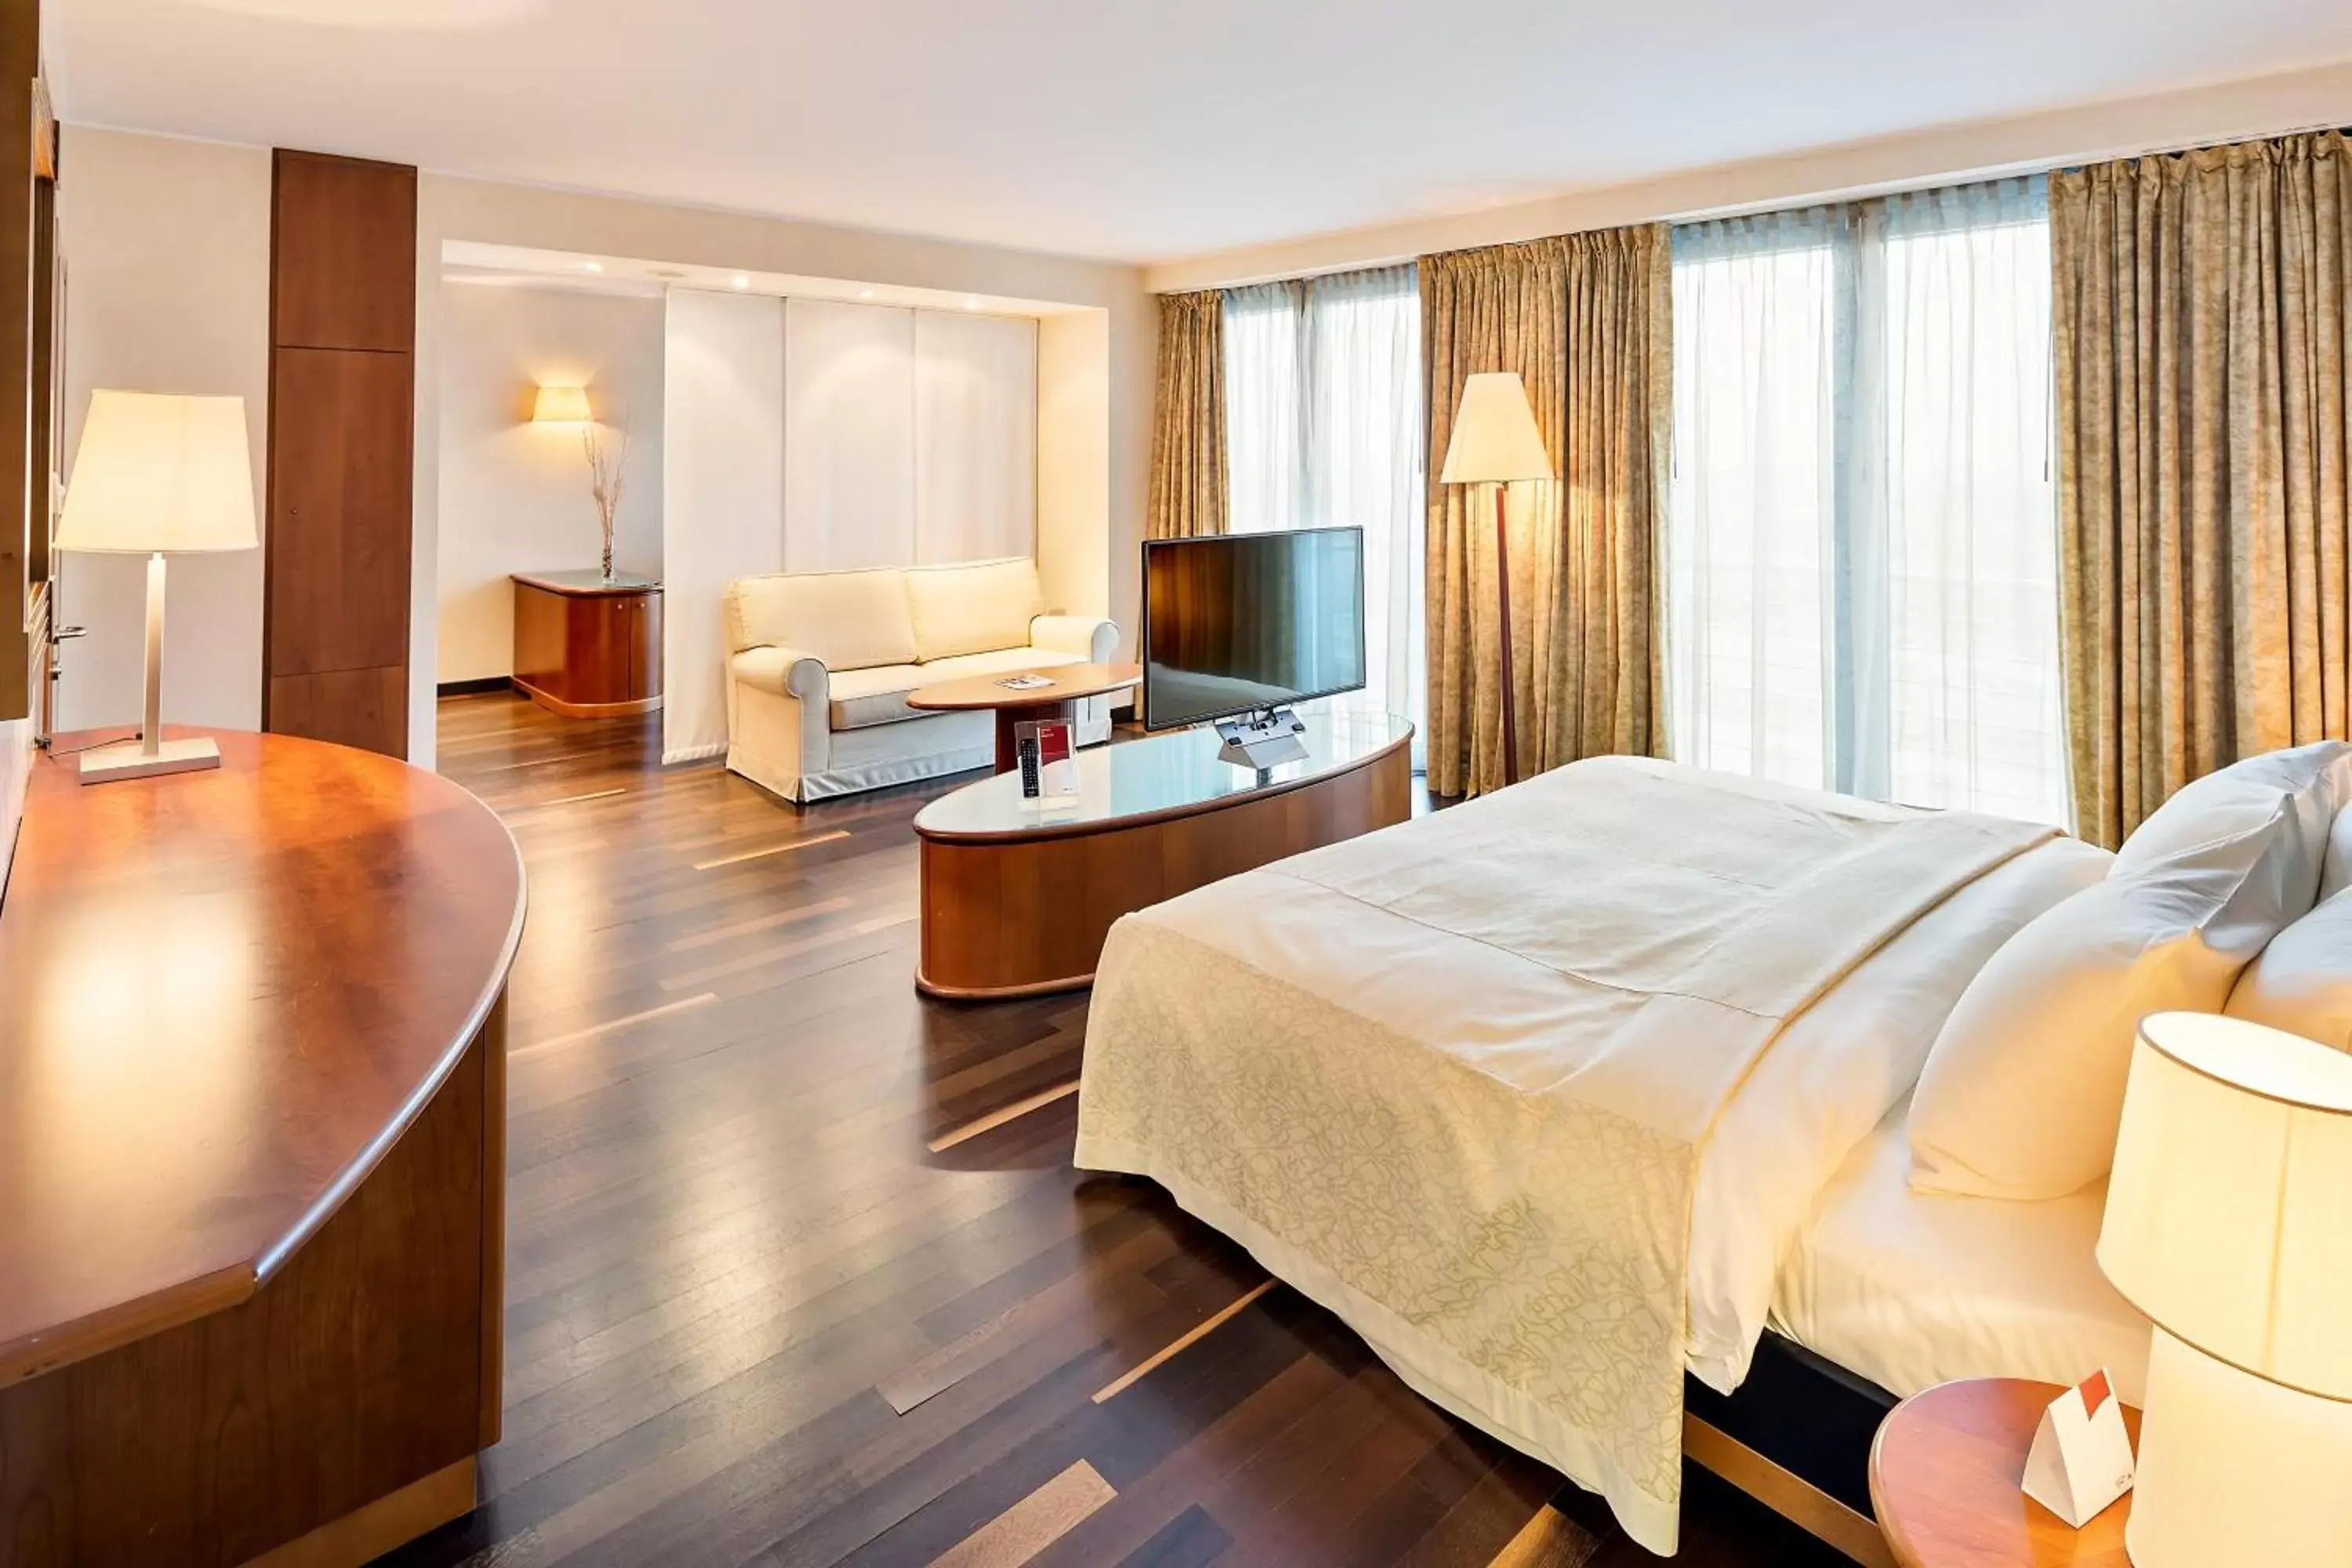 Bed in Austria Trend Hotel Ljubljana